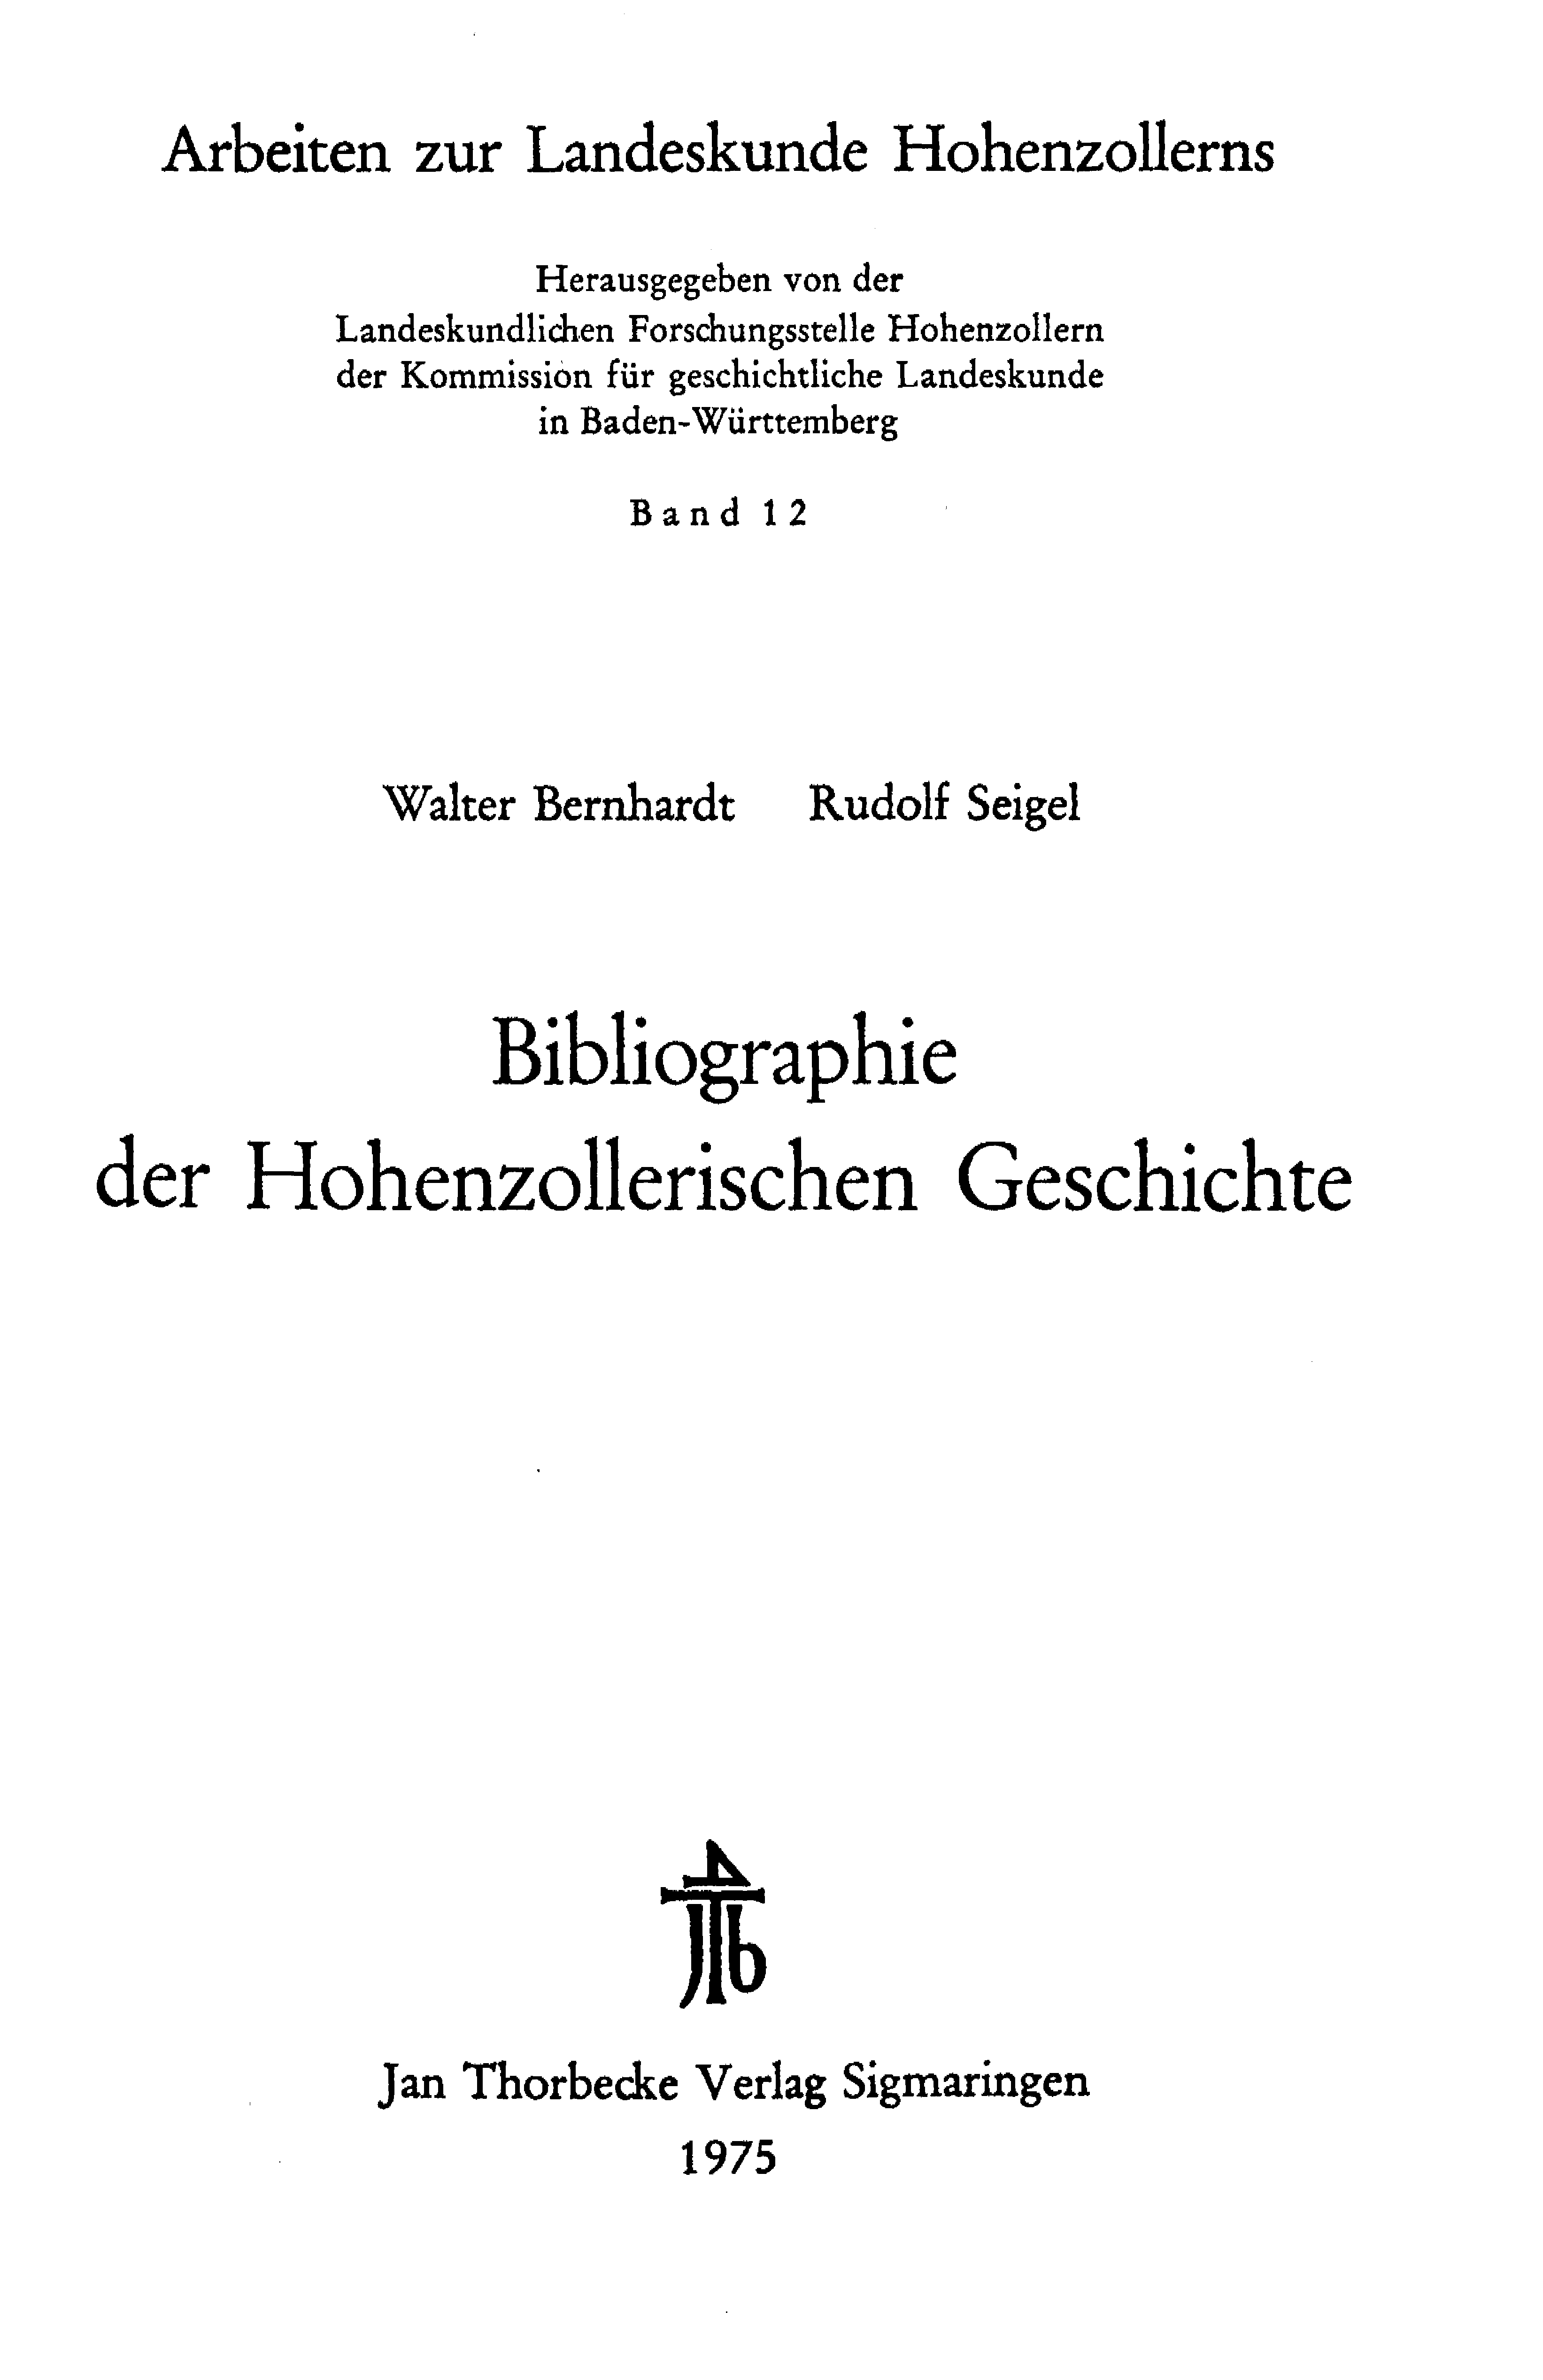 Bibliographie der Hohenzollerischen Geschichte